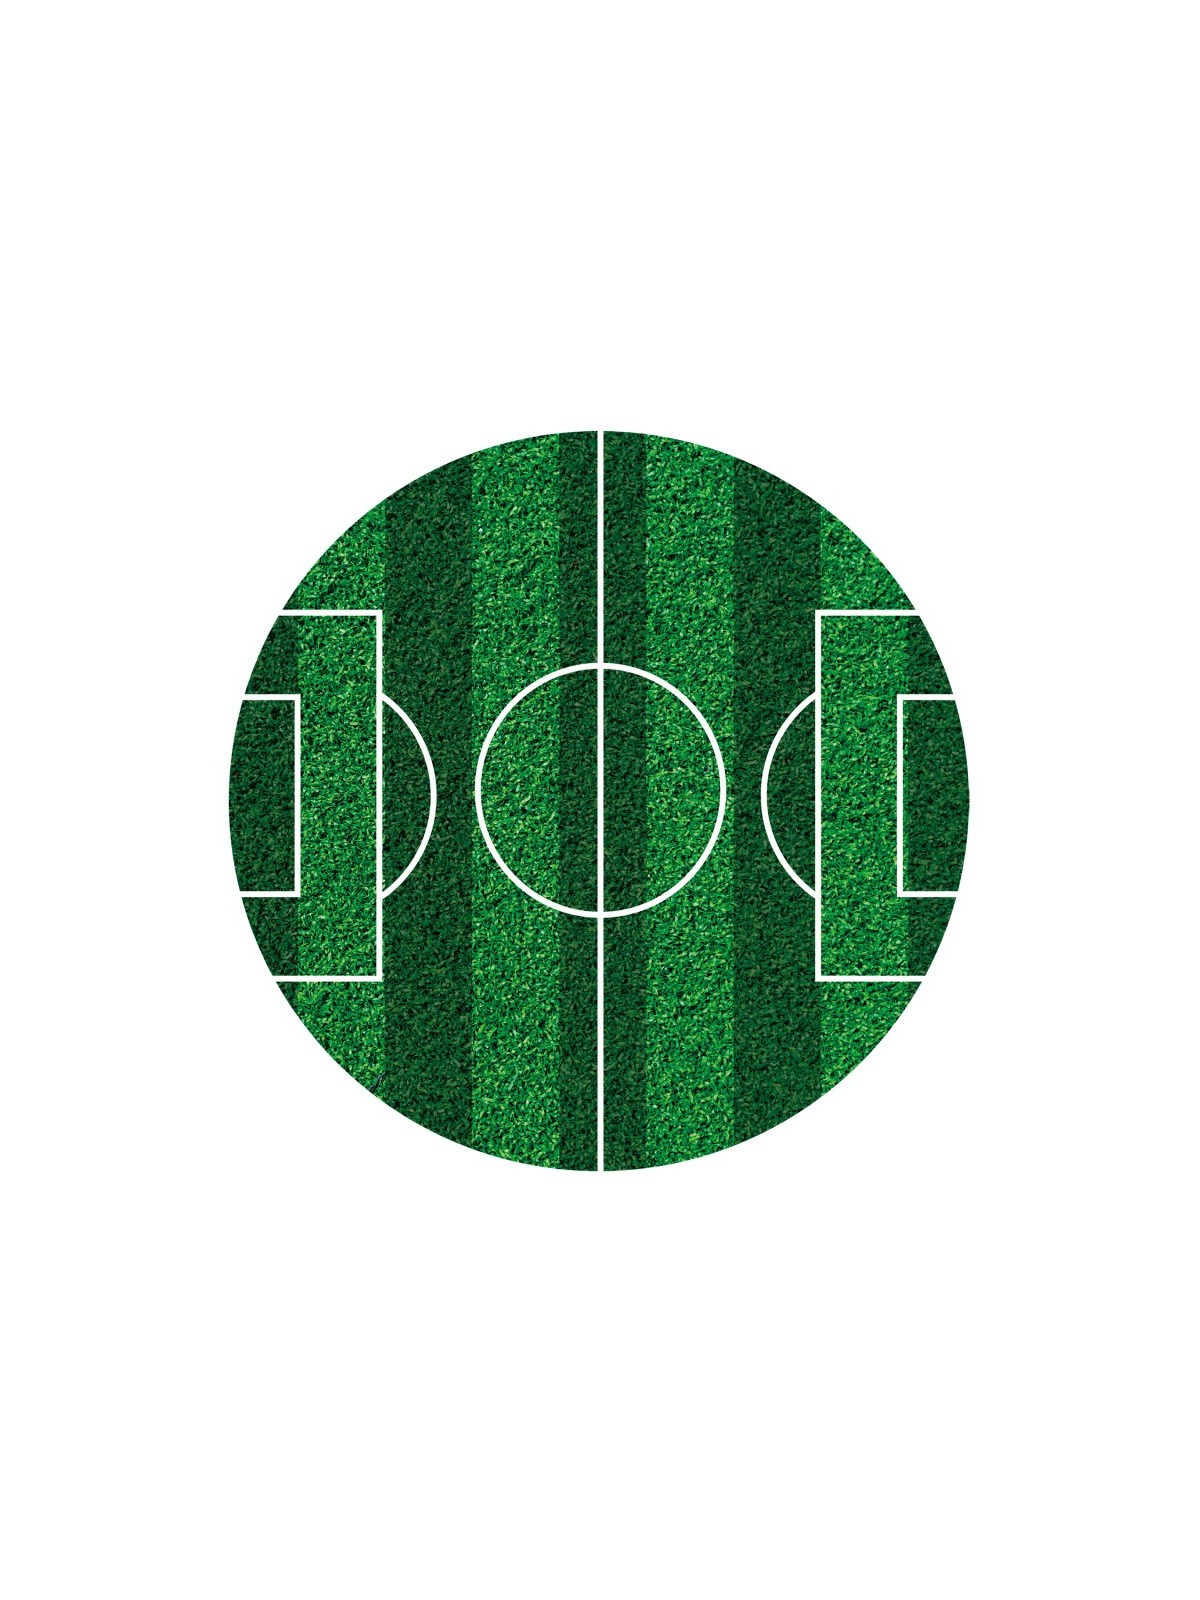 Dekora - fondánový list - futbalové ihrisko -16cm